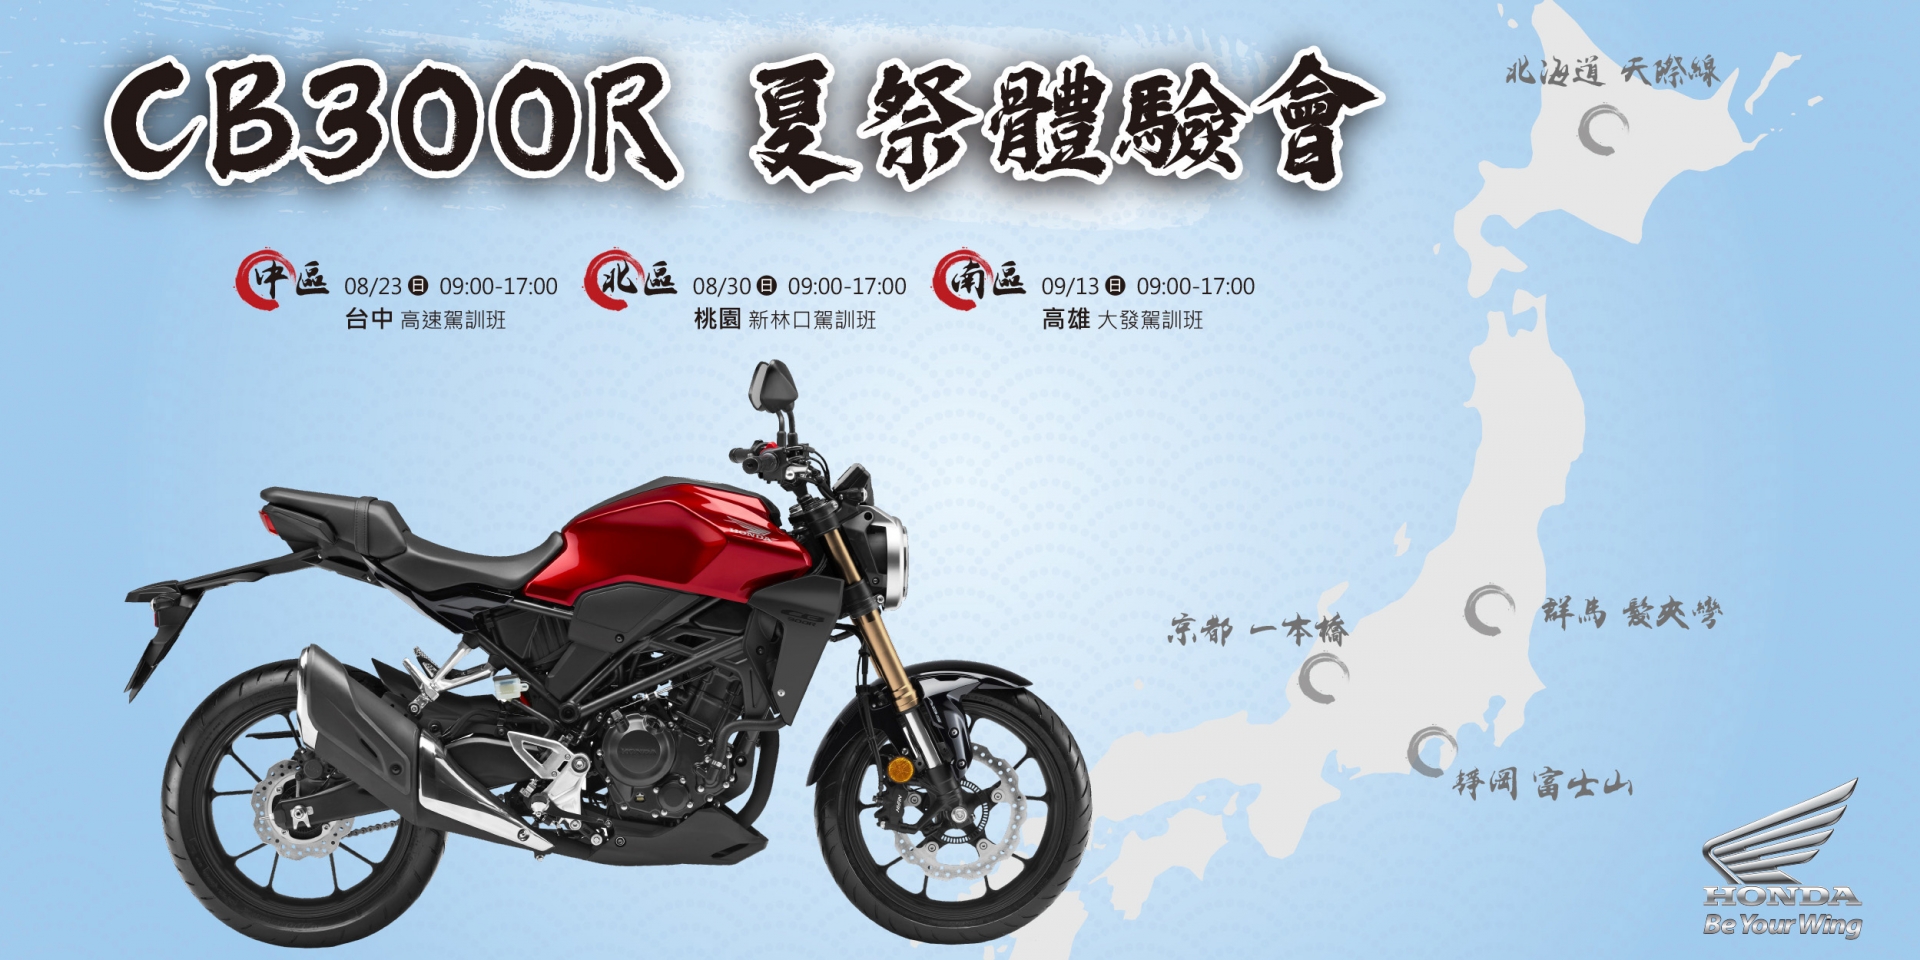 官方新聞稿。Honda Motorcycle 2020 CB300R 夏祭體驗會開跑 富饒日本特色景點全新關卡